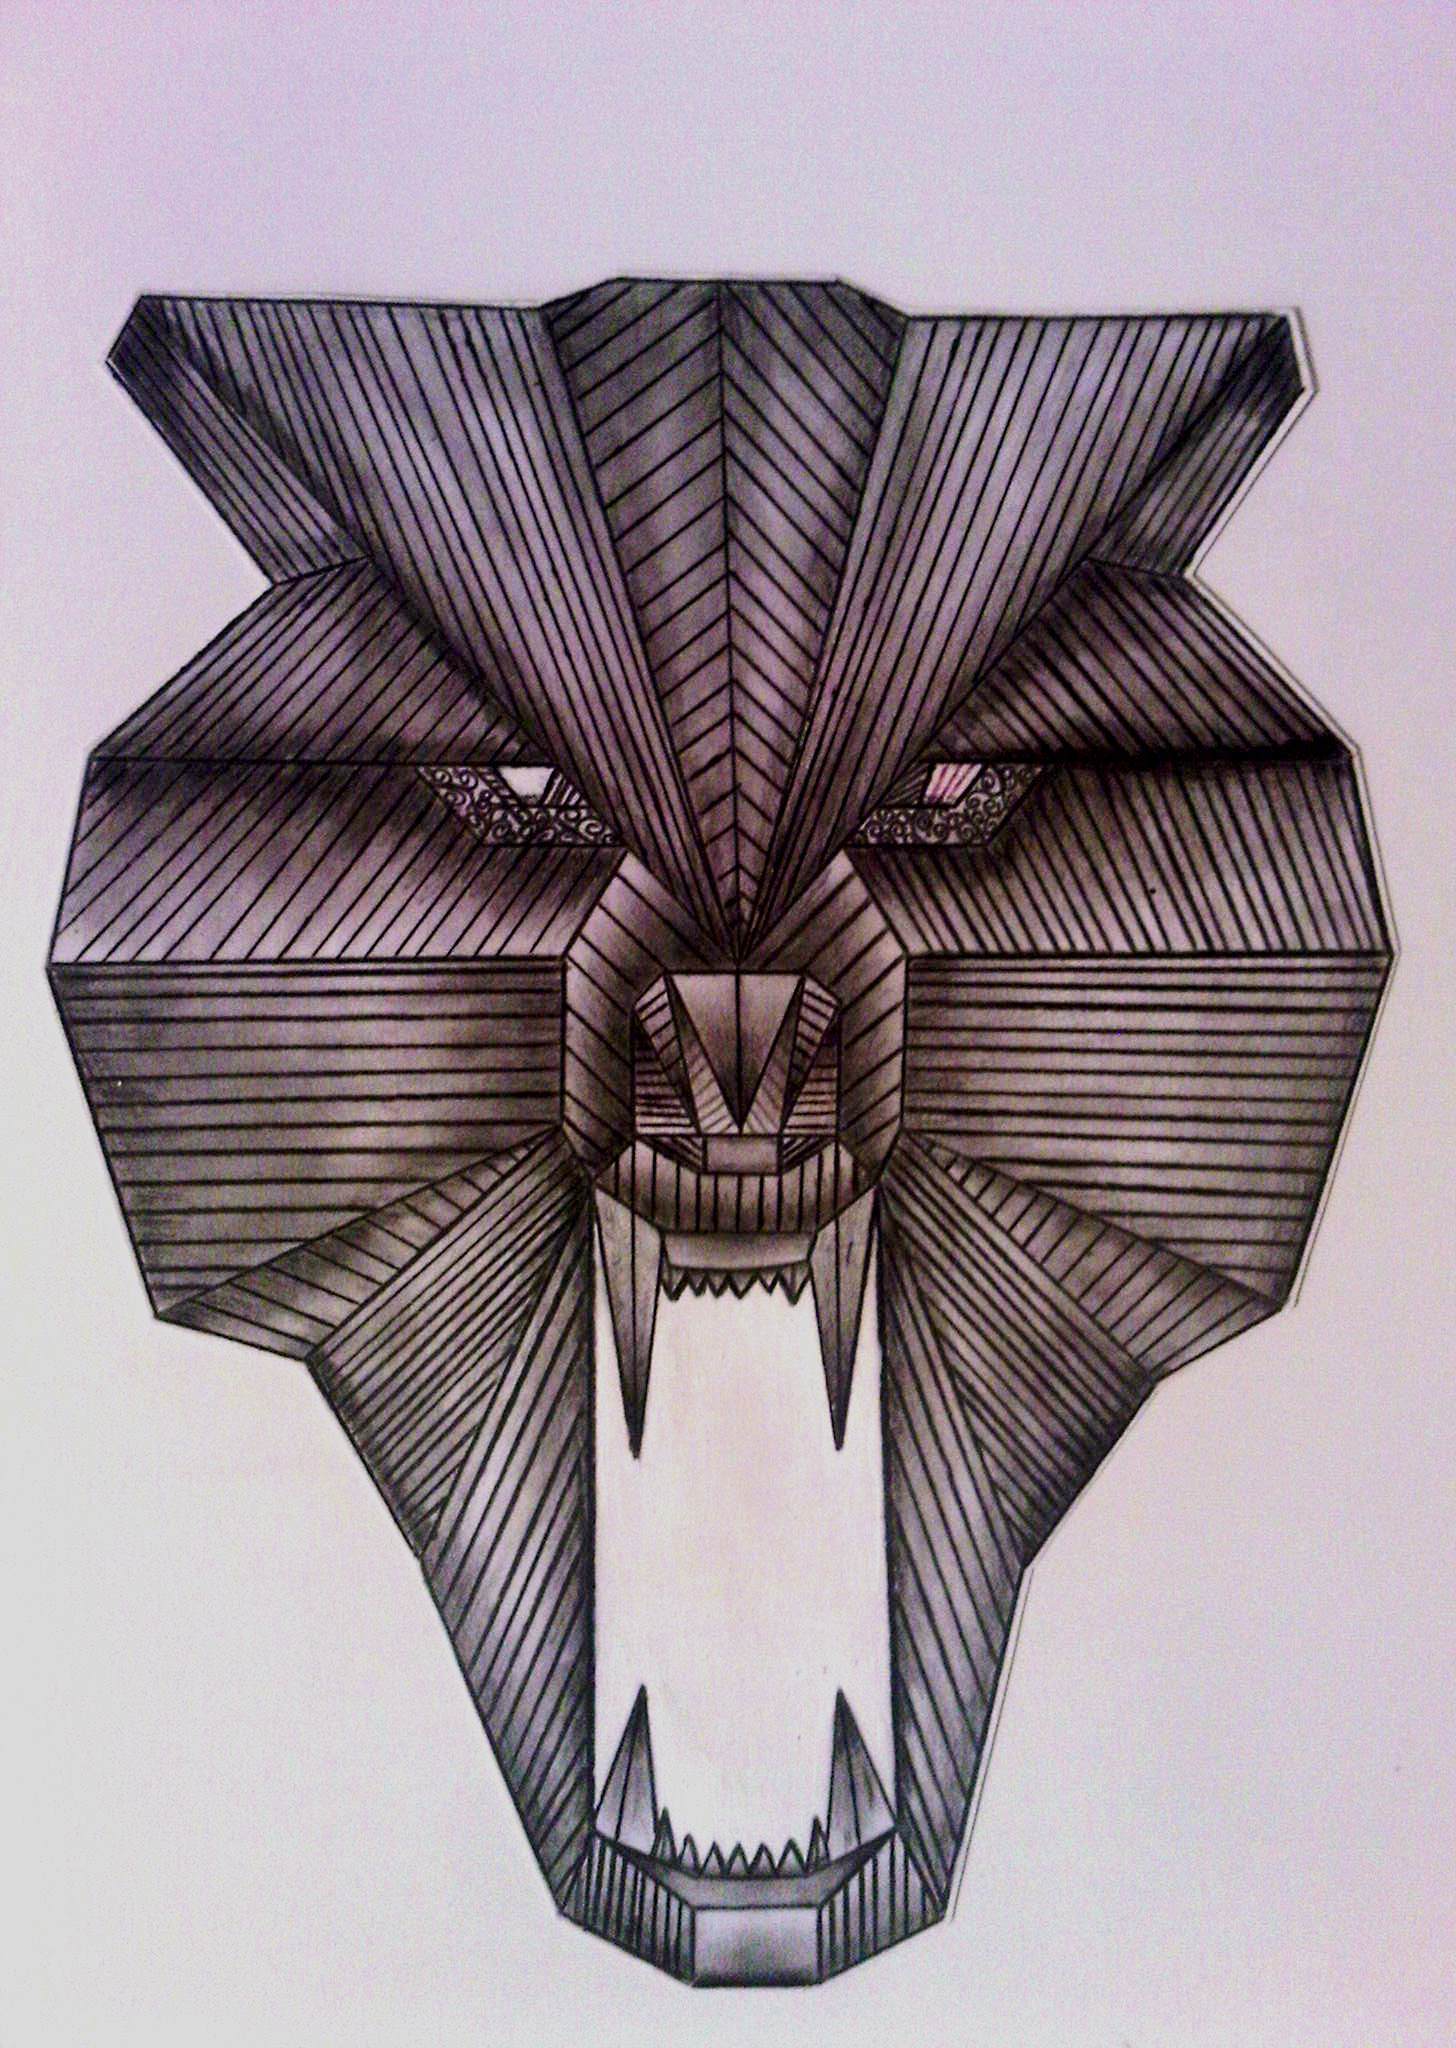 Dibujo a mano de un rostro de un lobo con figuras geométricas !! — Steemit